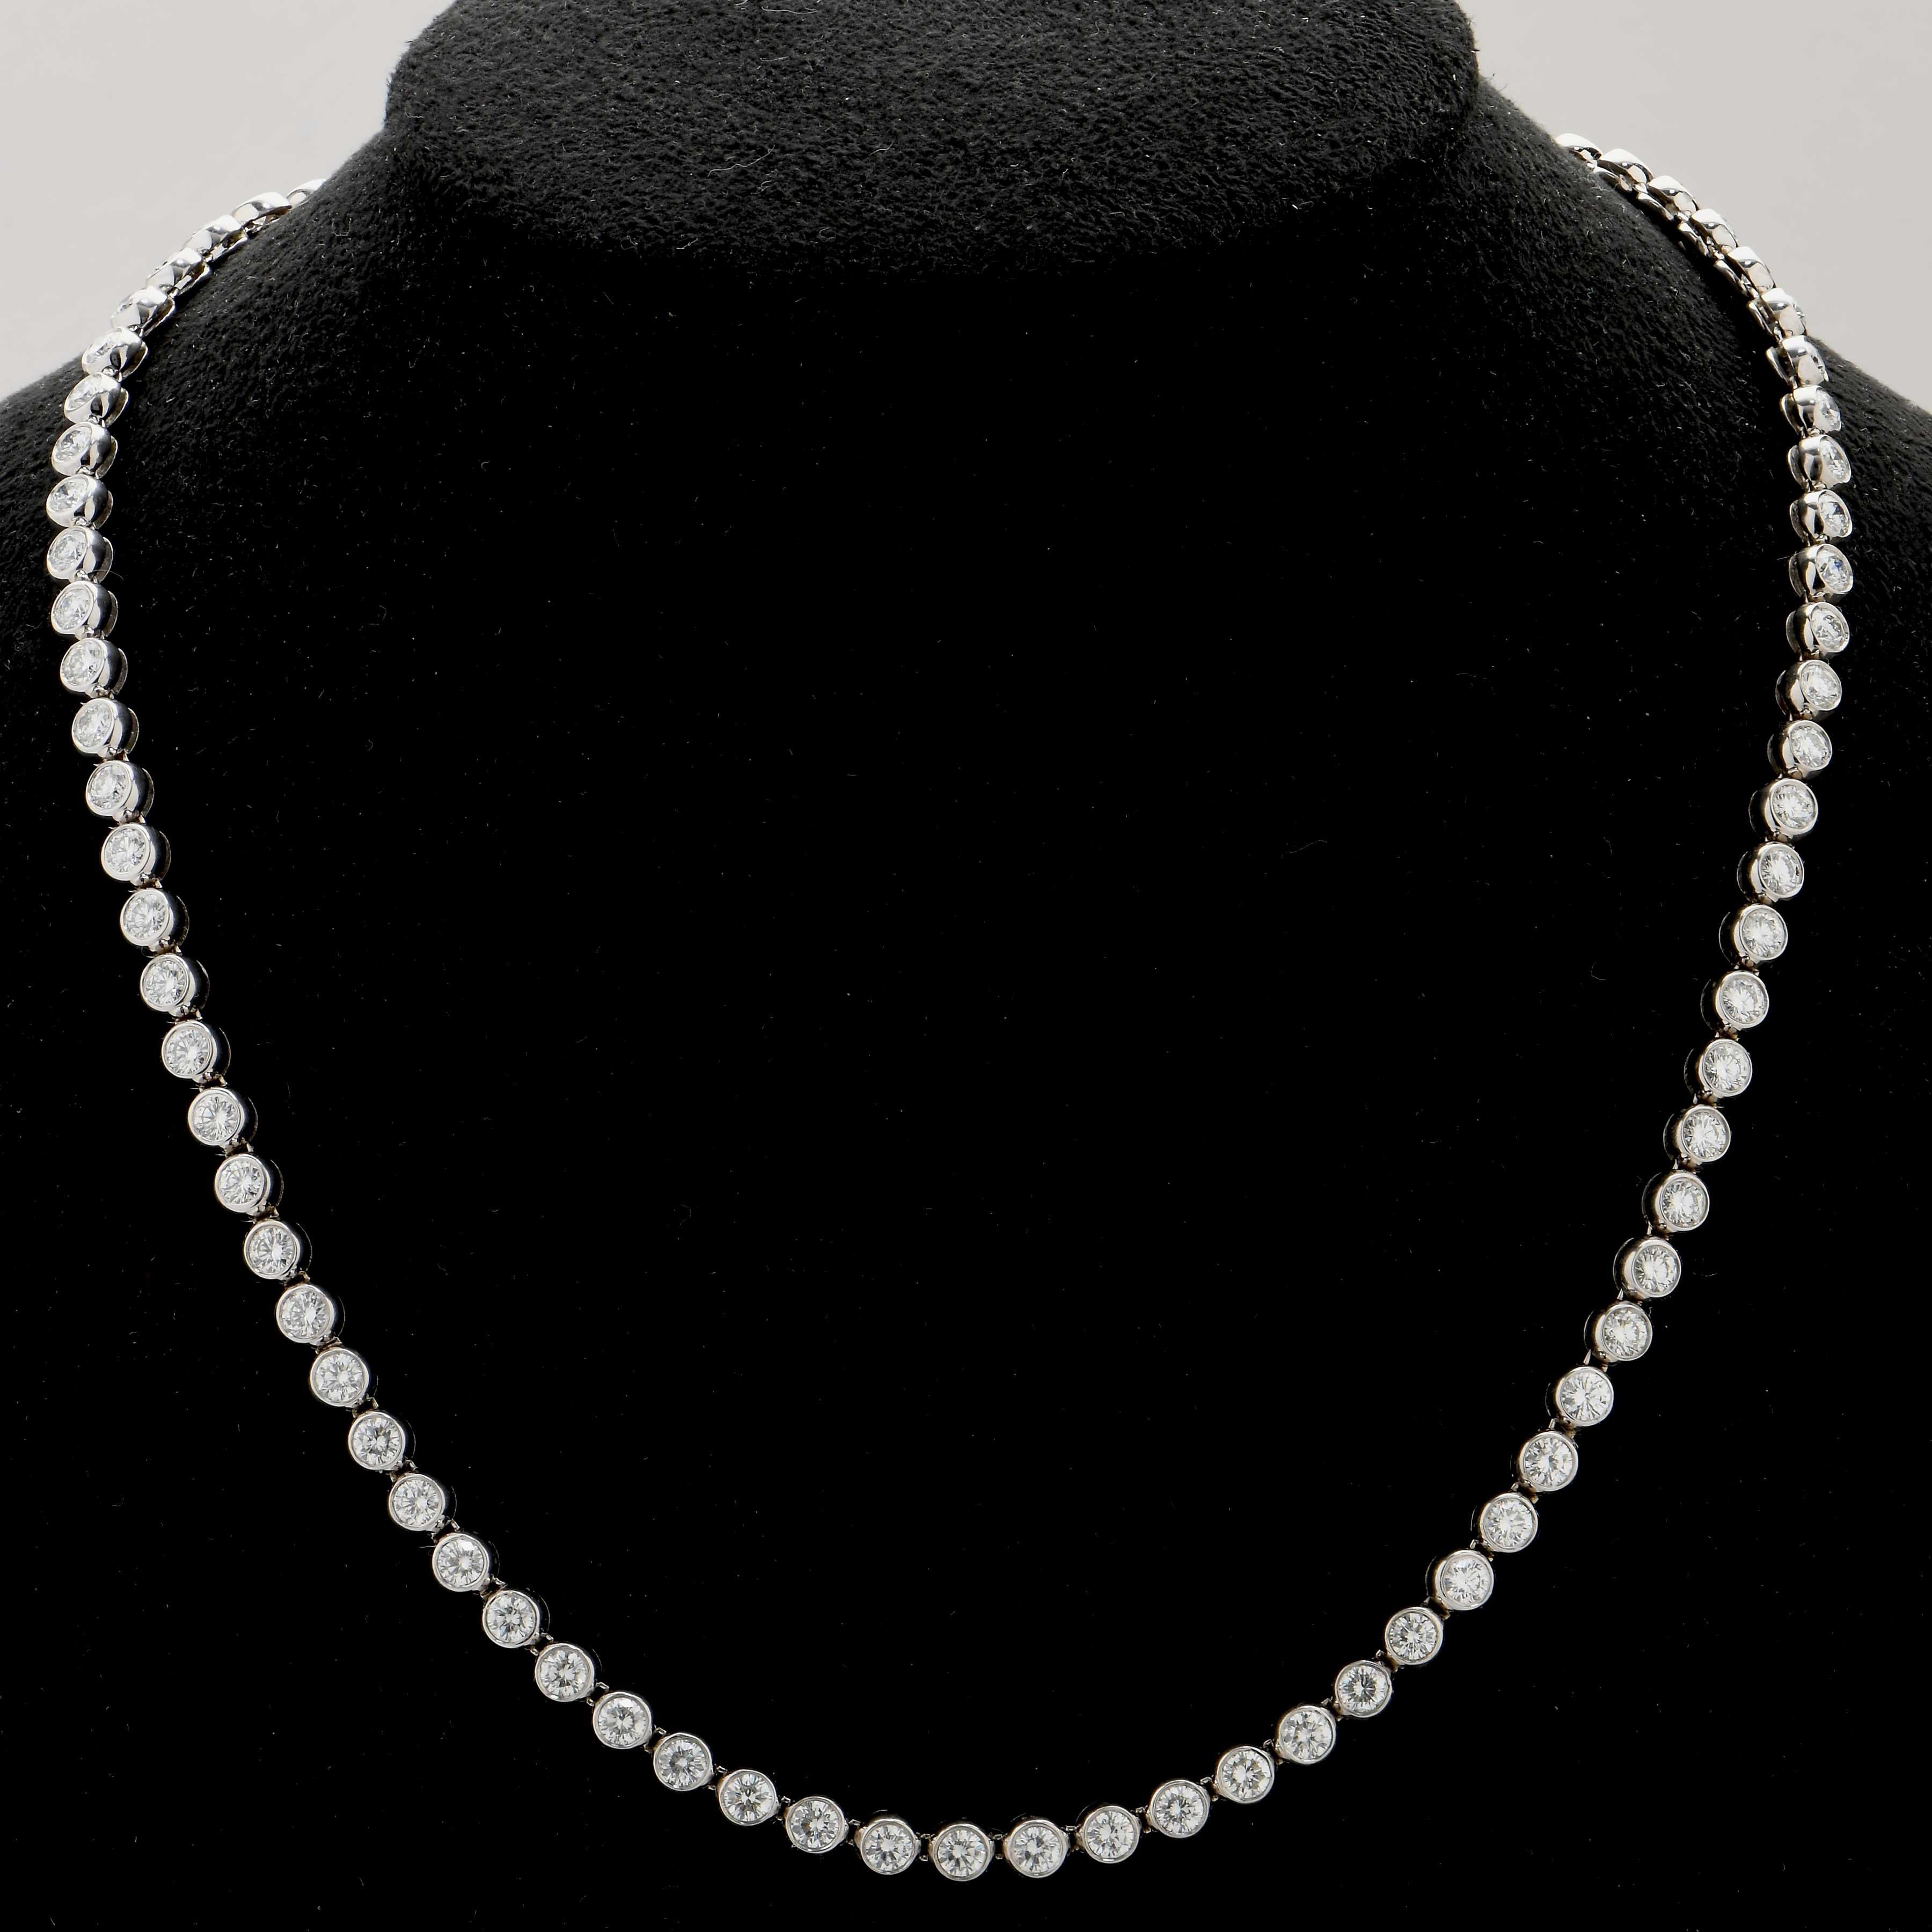 Ce magnifique collier Brilliante comporte 87 diamants ronds de taille brillant pour un poids total estimé à 10 carats de diamants très bien taillés de couleur H et de pureté SI.
16 pouces de longueur.
Métal : or blanc 18 carats
Poids : 29,4 grammes
